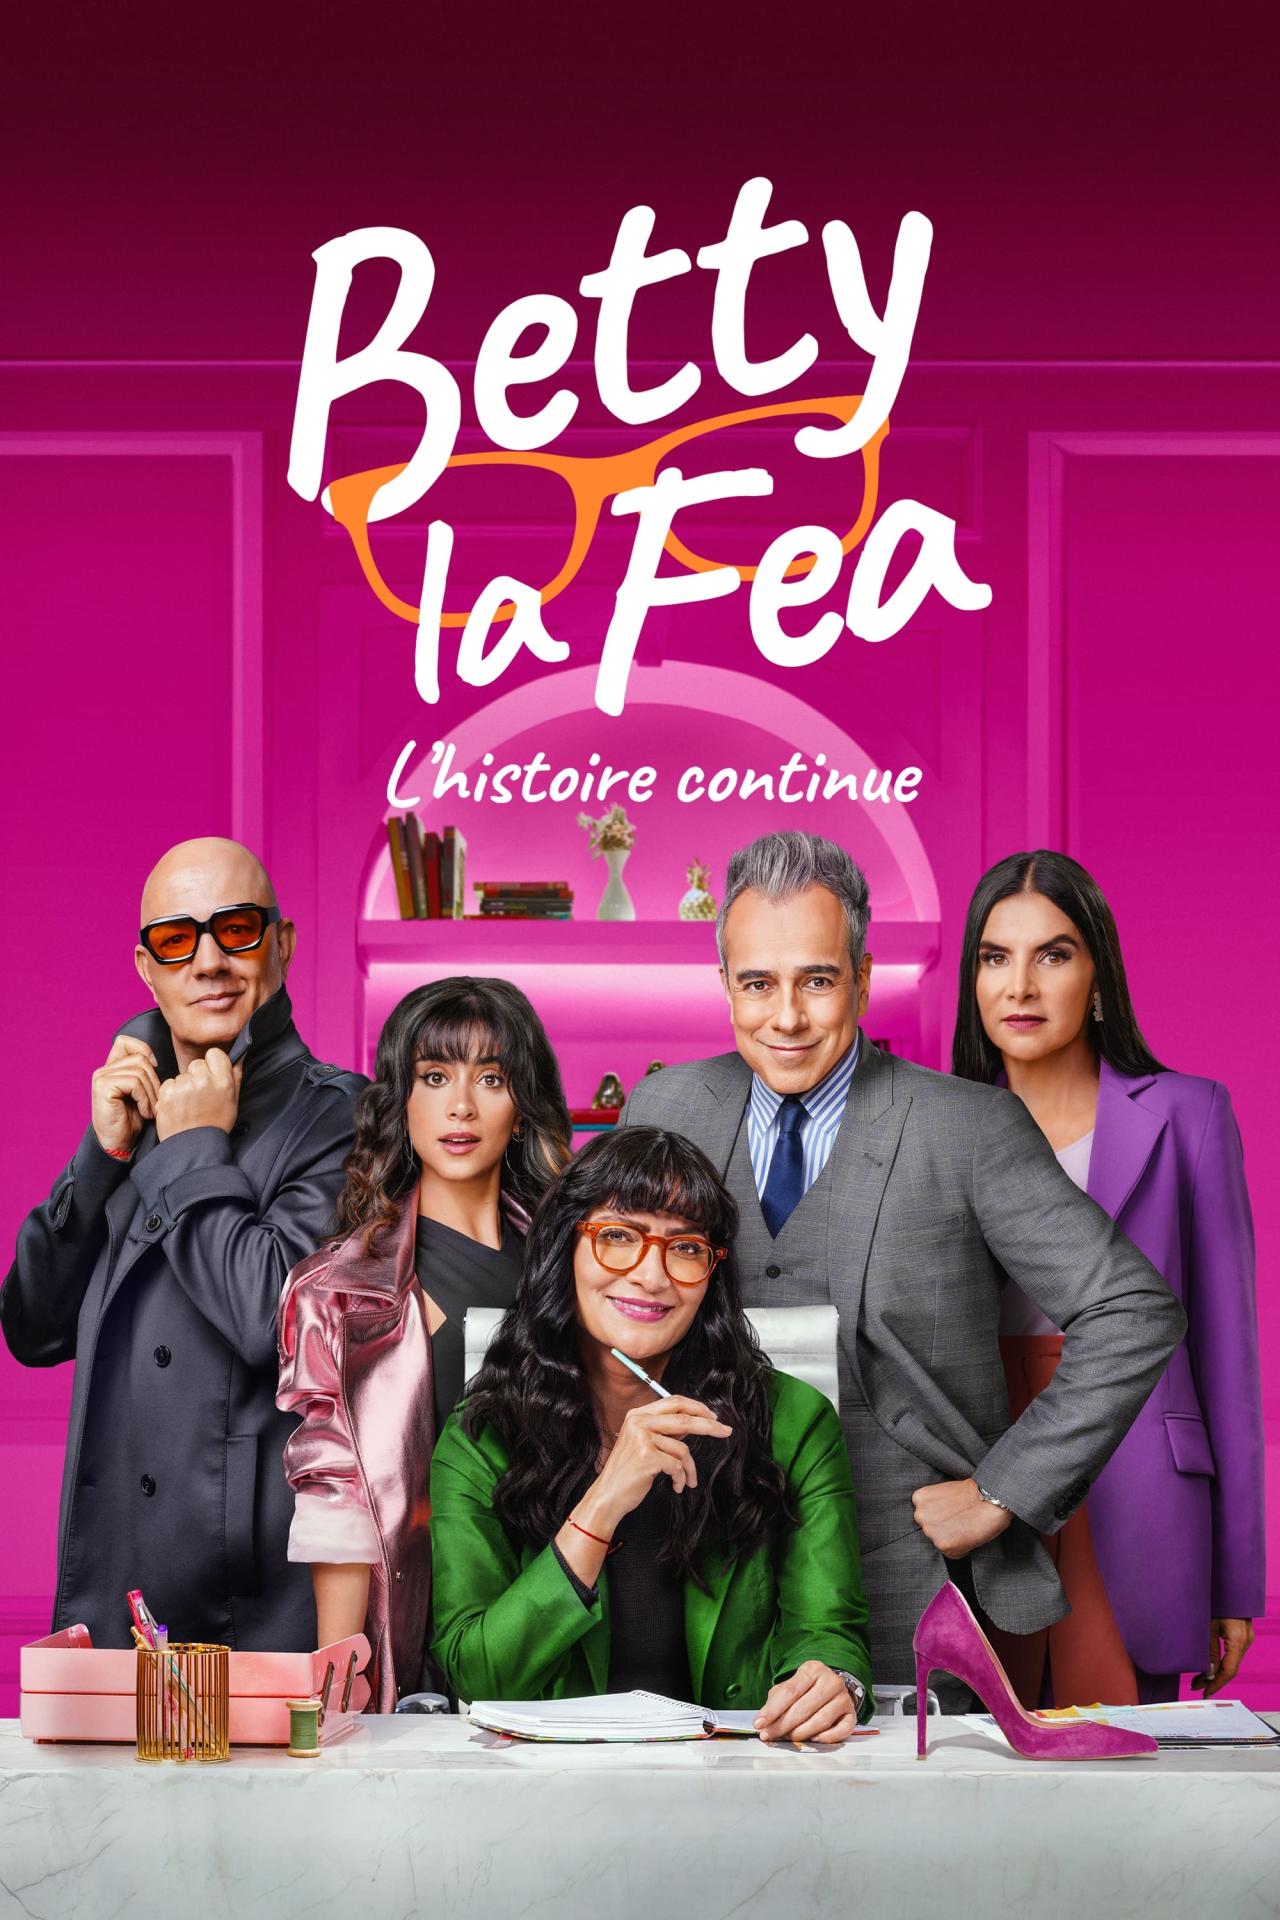 Les saisons de Betty la Fea : L'histoire continue sont-elles disponibles sur Netflix ou autre ?